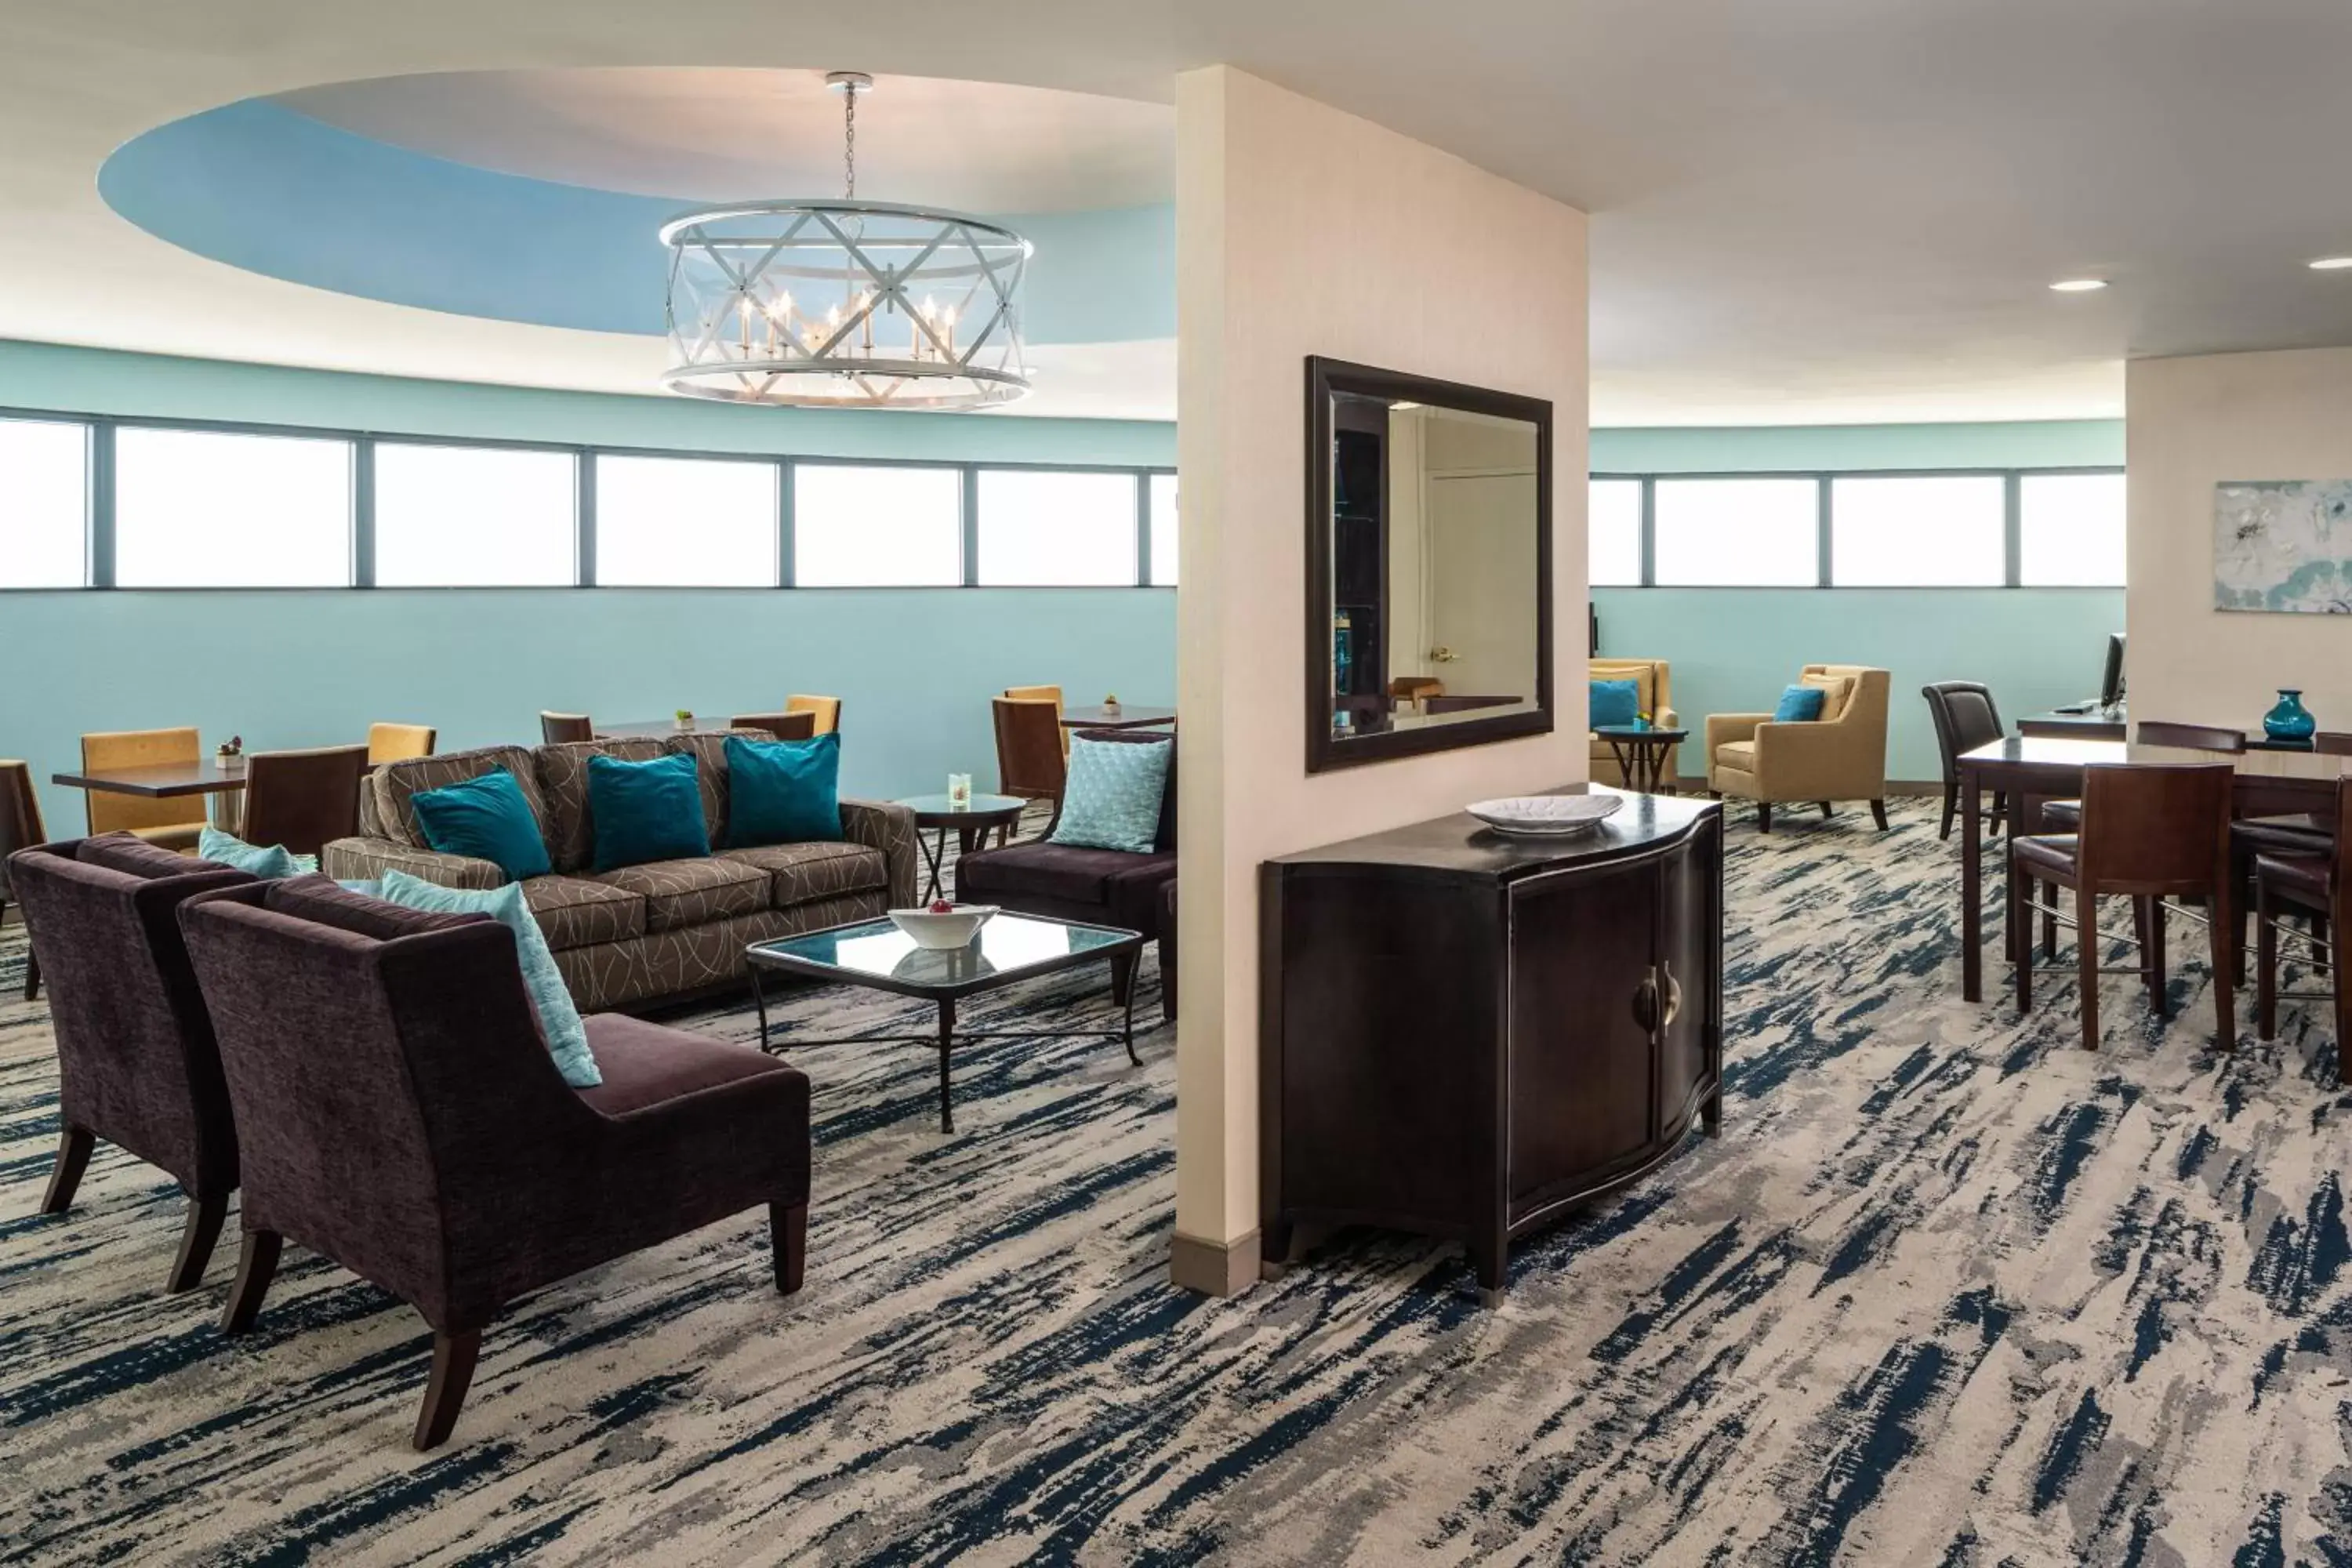 Lounge or bar, Seating Area in Sheraton Tampa Brandon Hotel